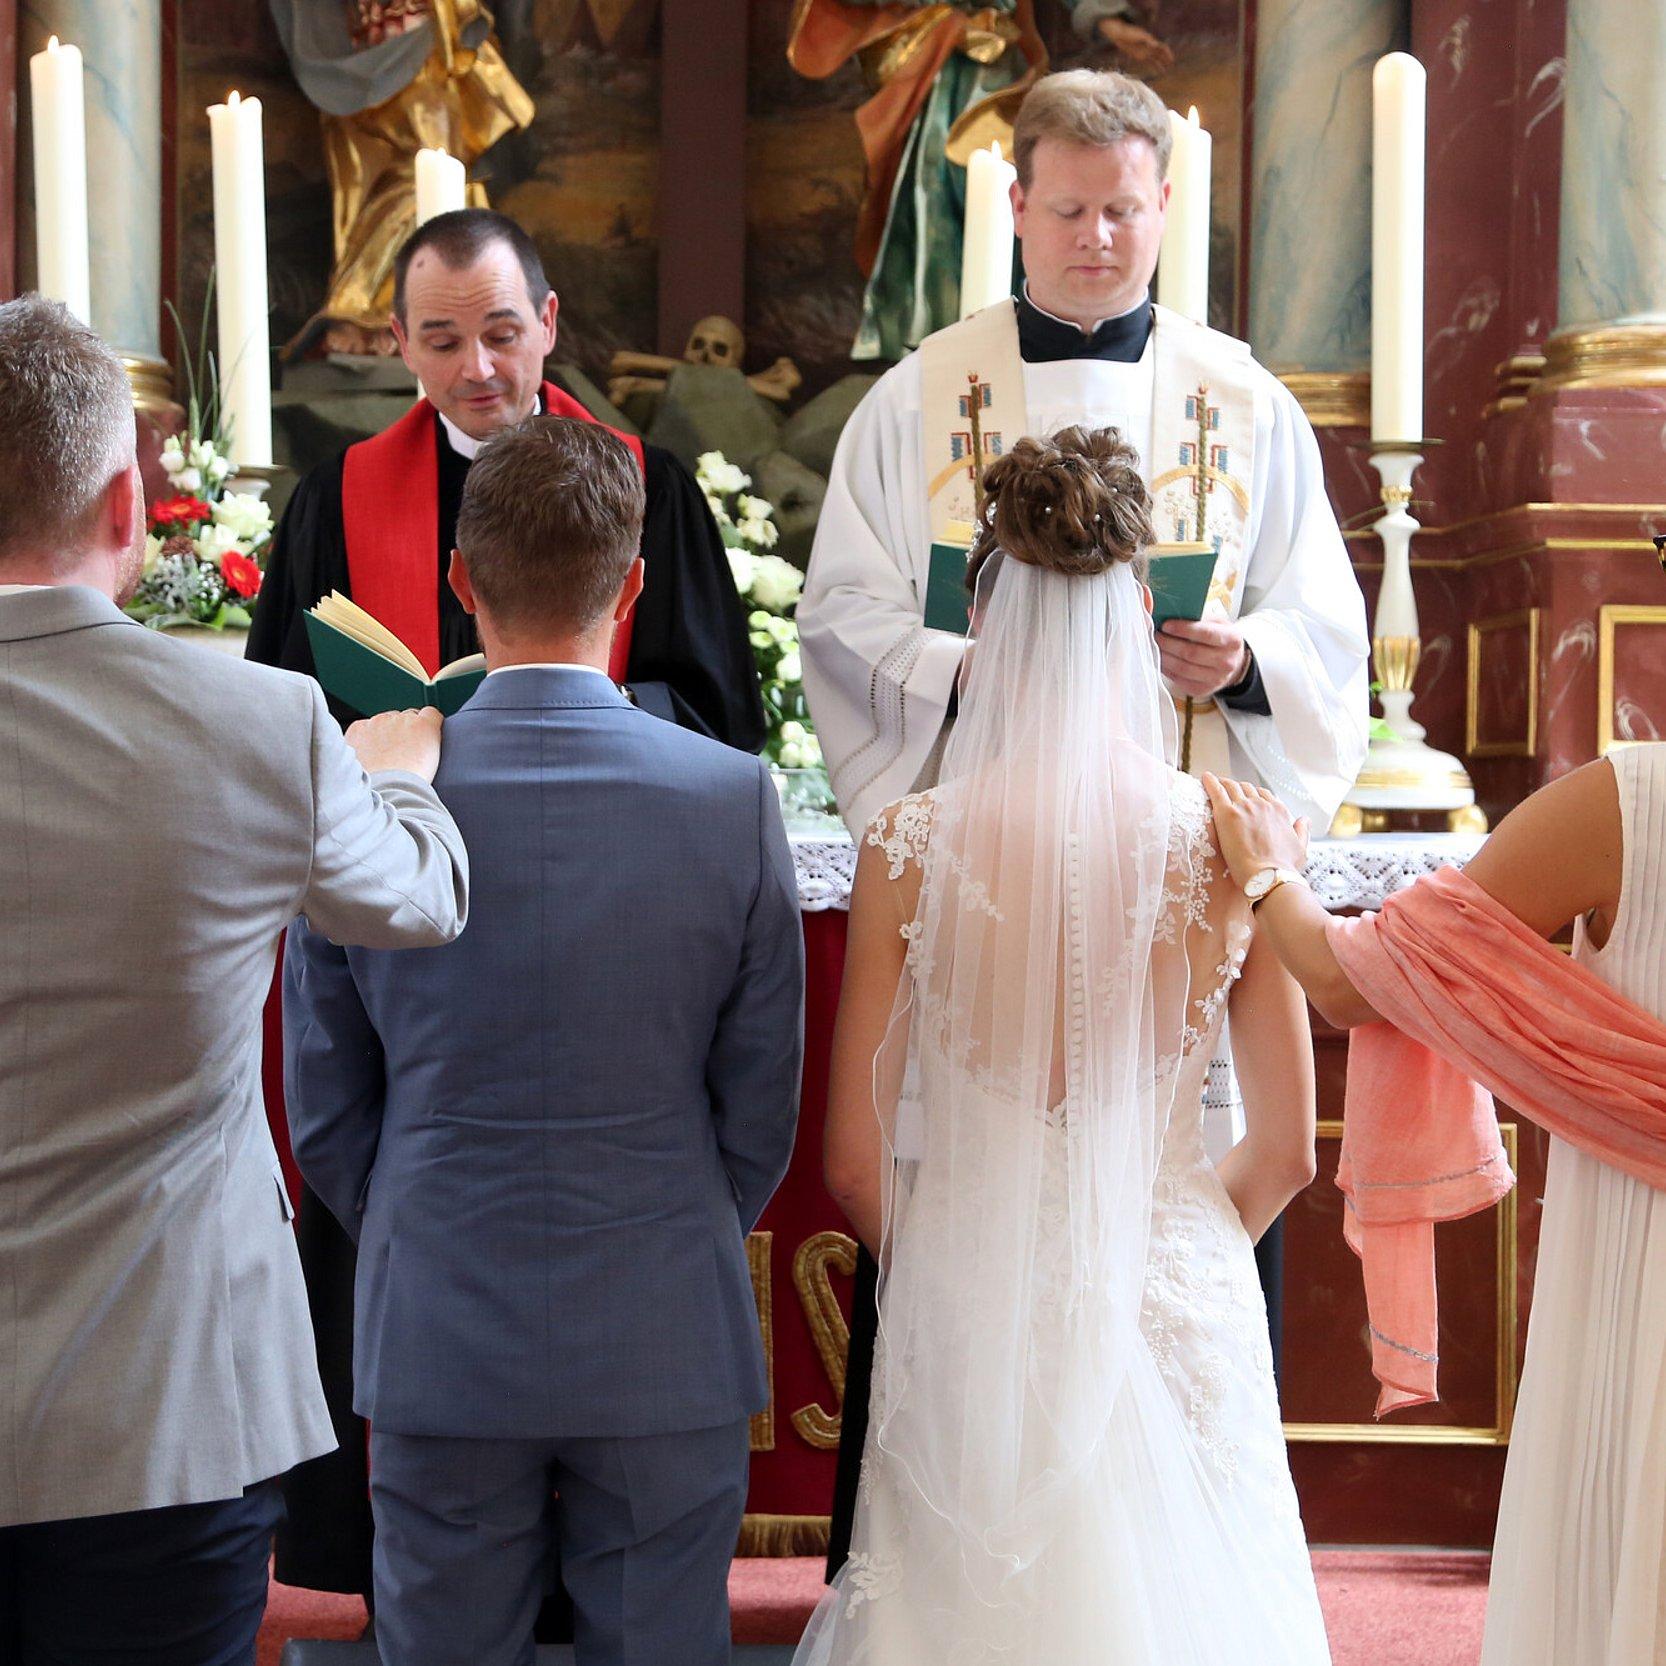 Ein Brautpaar mit Trauzeugen vor dem Altar. Vor dem Altar stehen ein katholischer und ein evangelischer Pfarrer